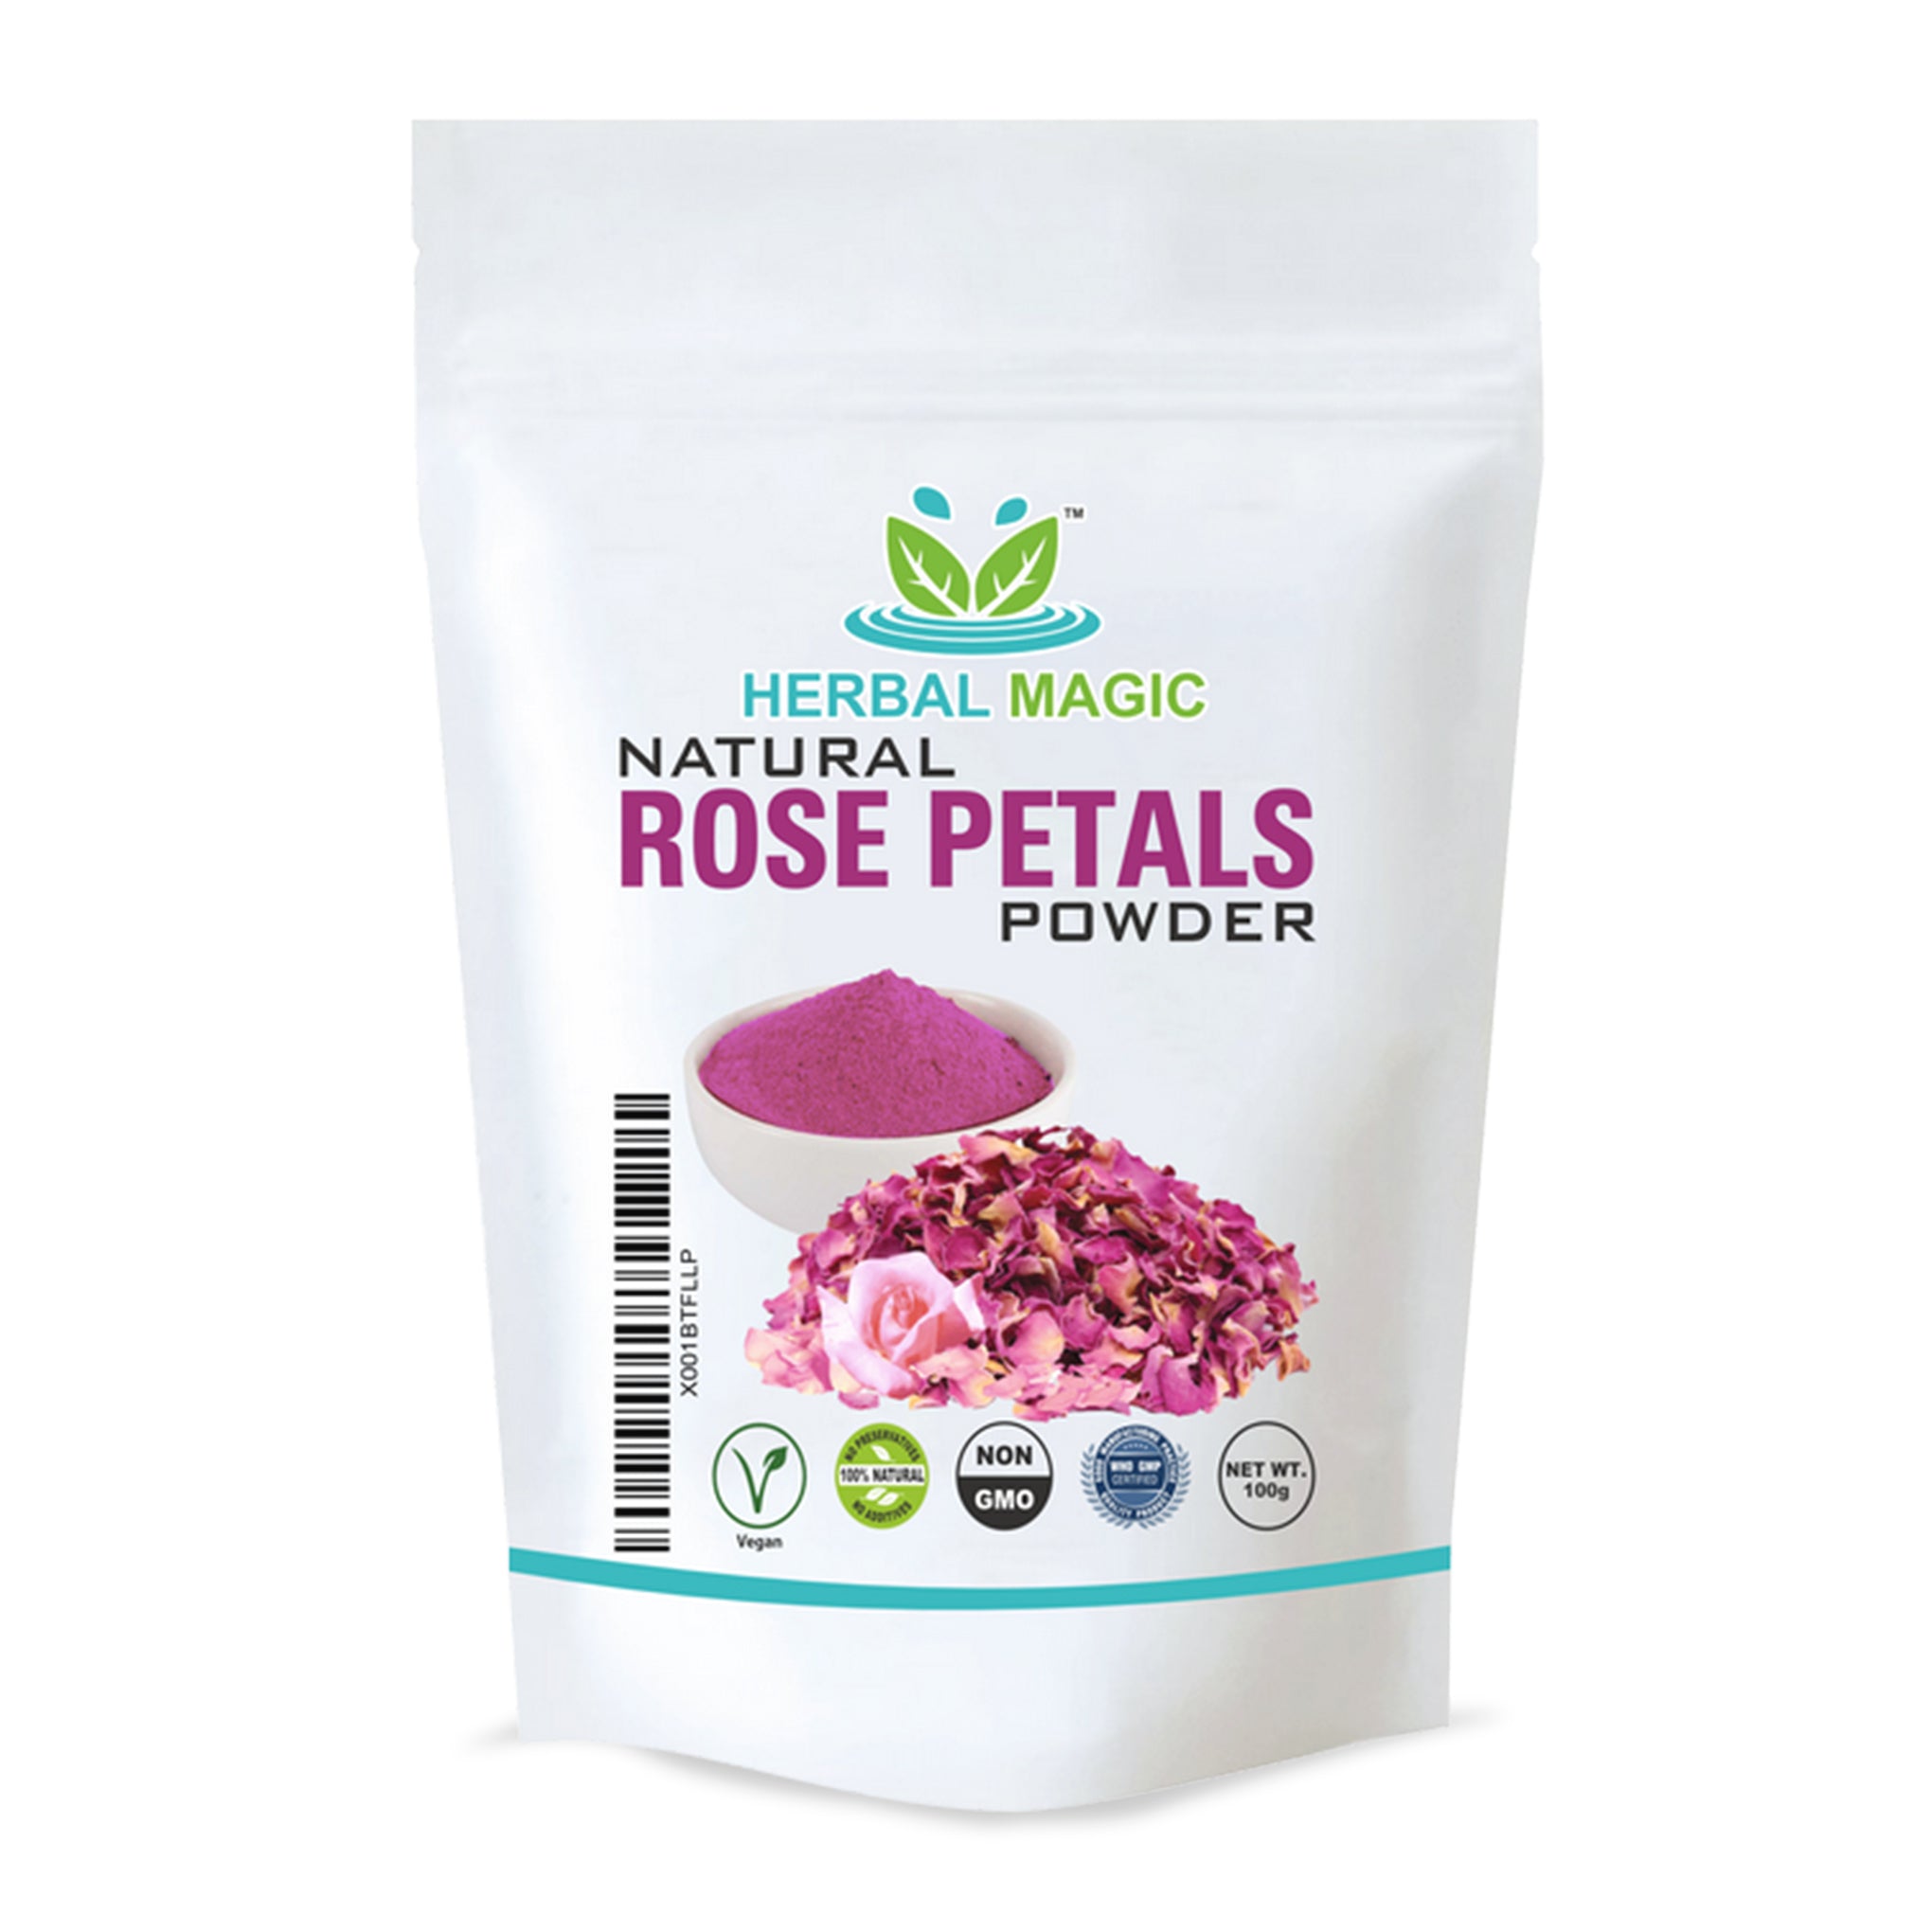 Natural Rose Petals Powder